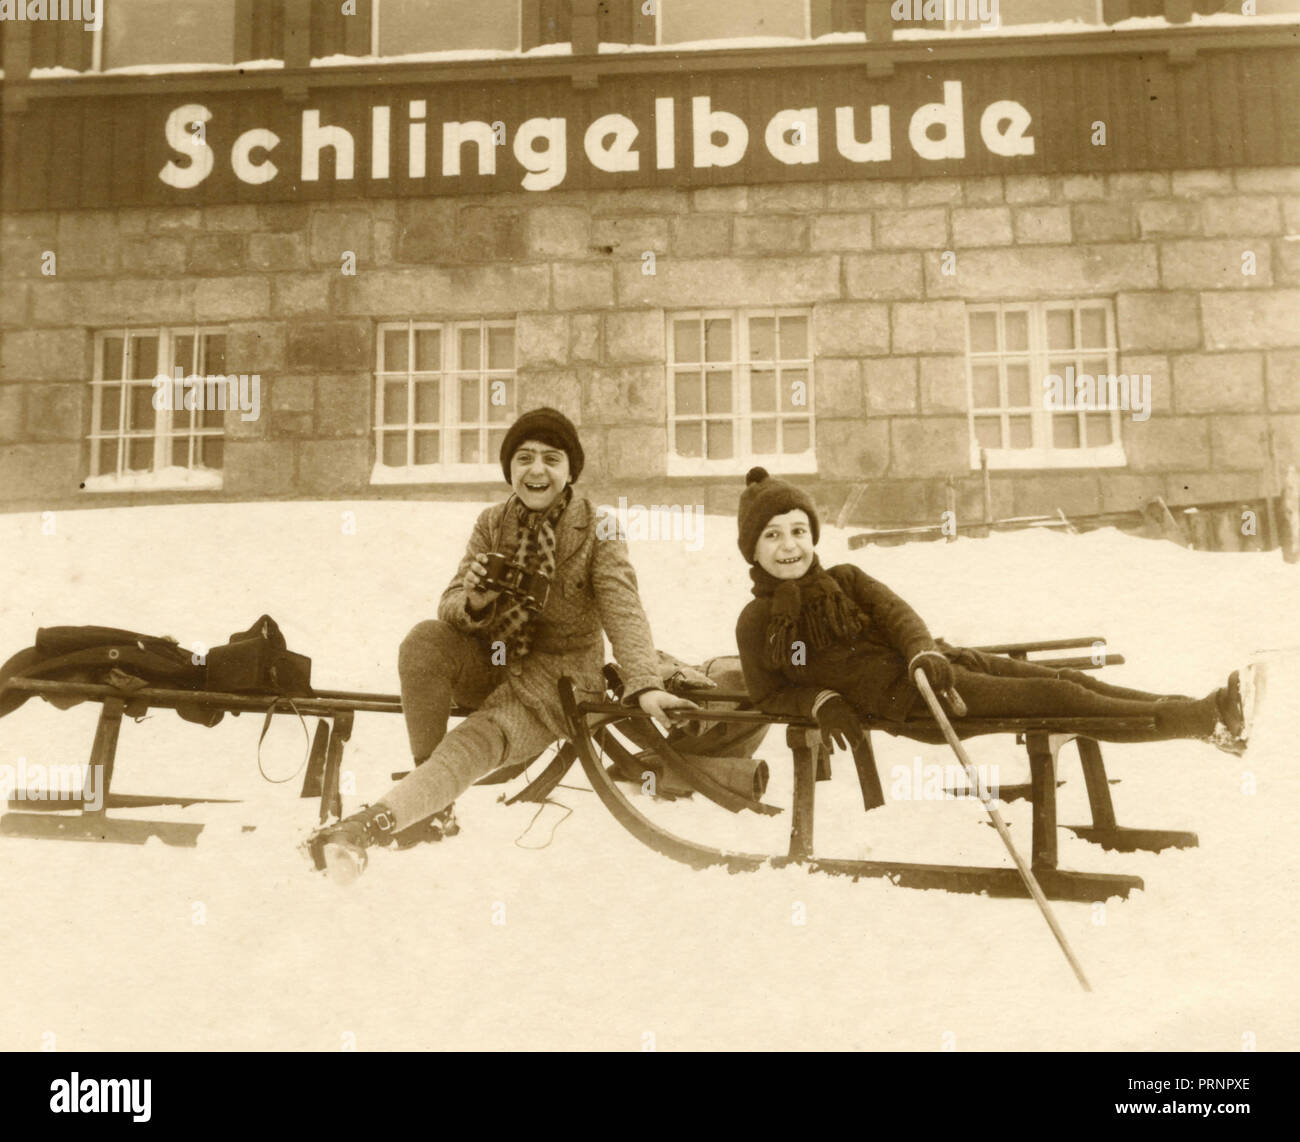 Los niños con sleddings, Schlingelbaude, Alemania 1926 Foto de stock